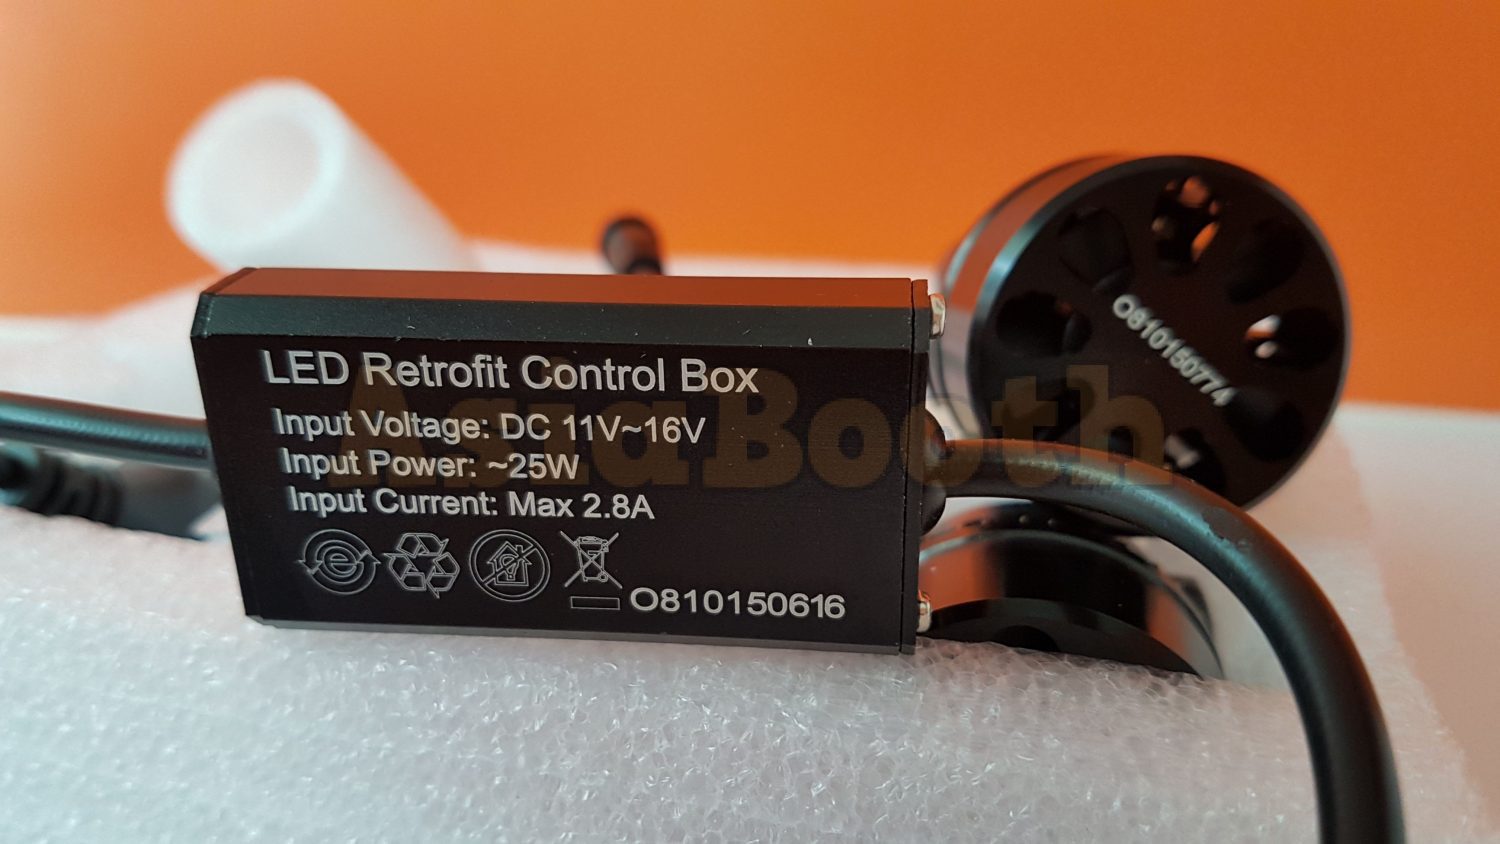 OSRAM LED Headlight LED Retrofit Conversion Kit 12Volt – H8 H11 H16 6000K -  Asia Booth